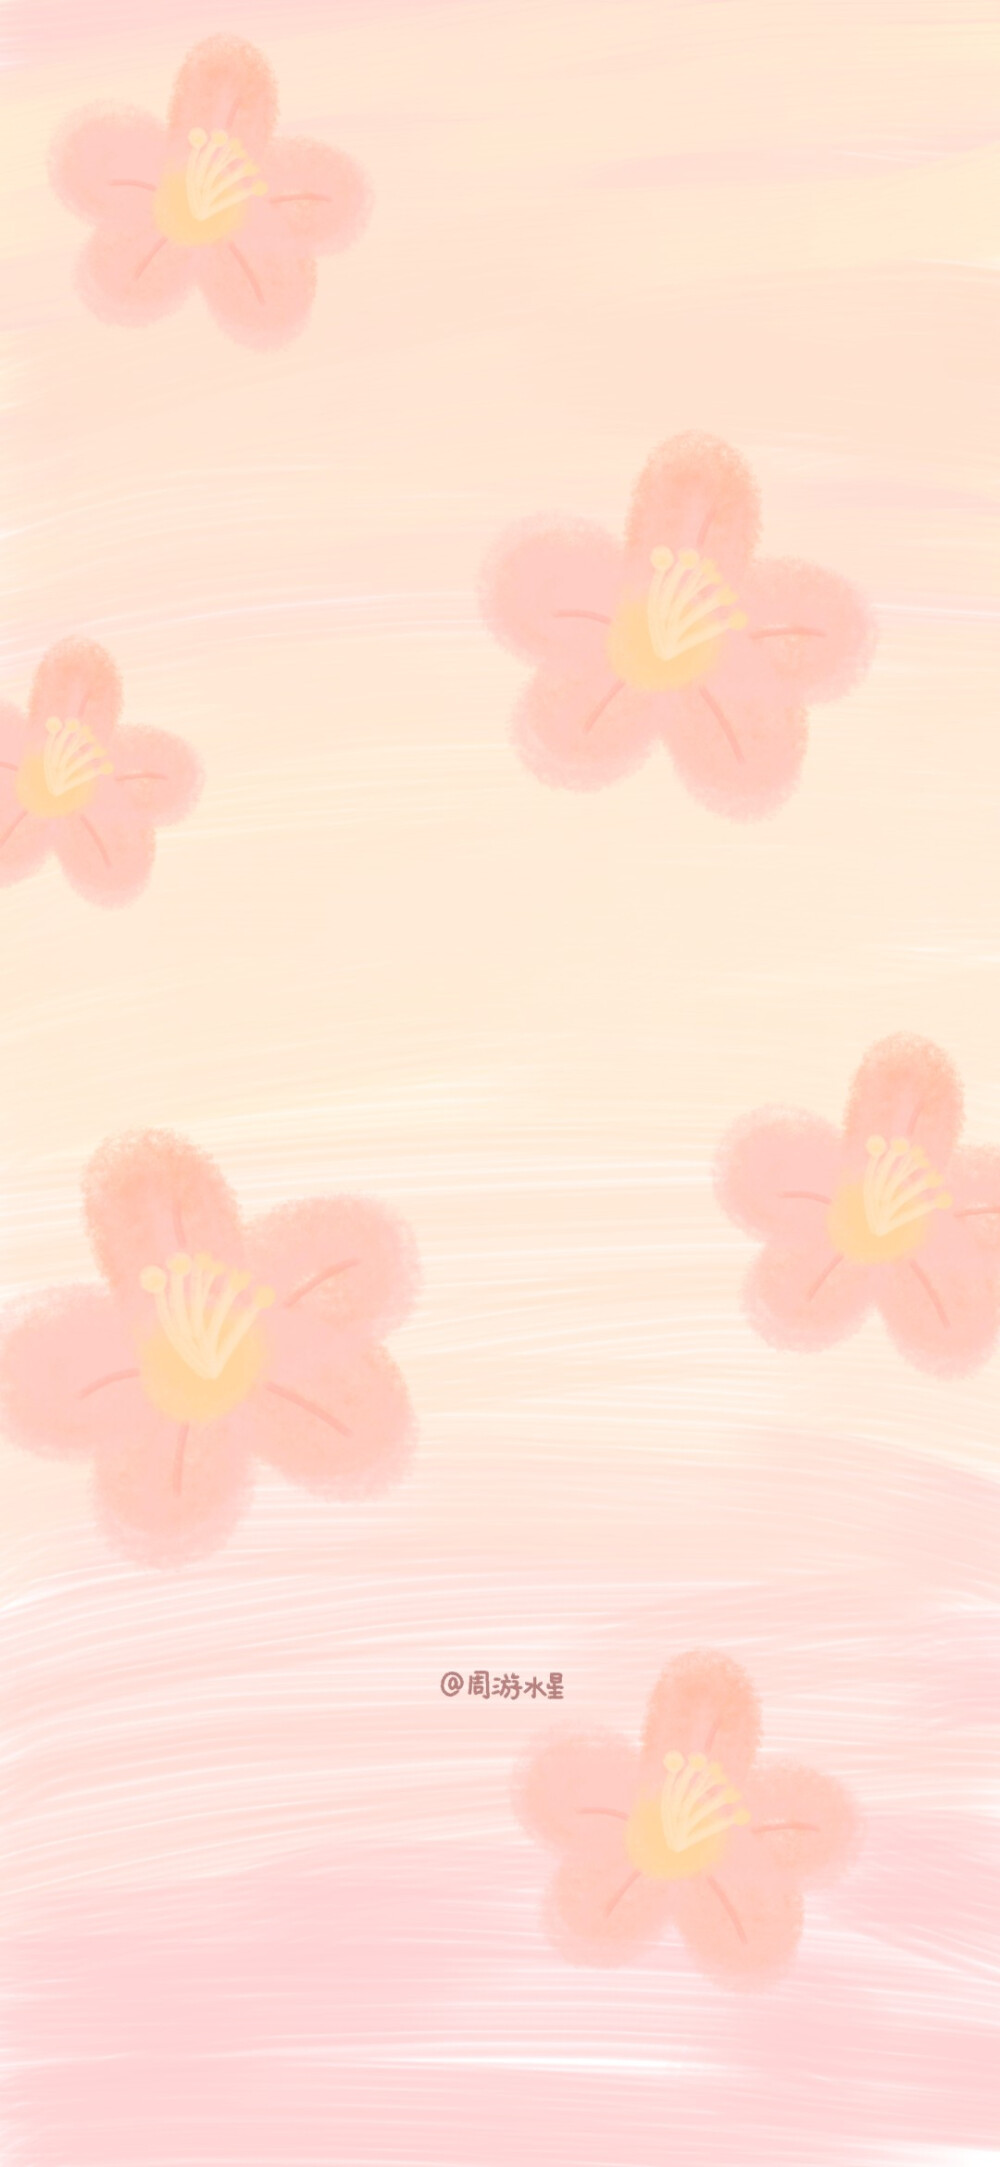 微博原创@周游水星
粉色花朵壁纸
搬运出处见水印。抱图点赞。
禁商用 侵删。